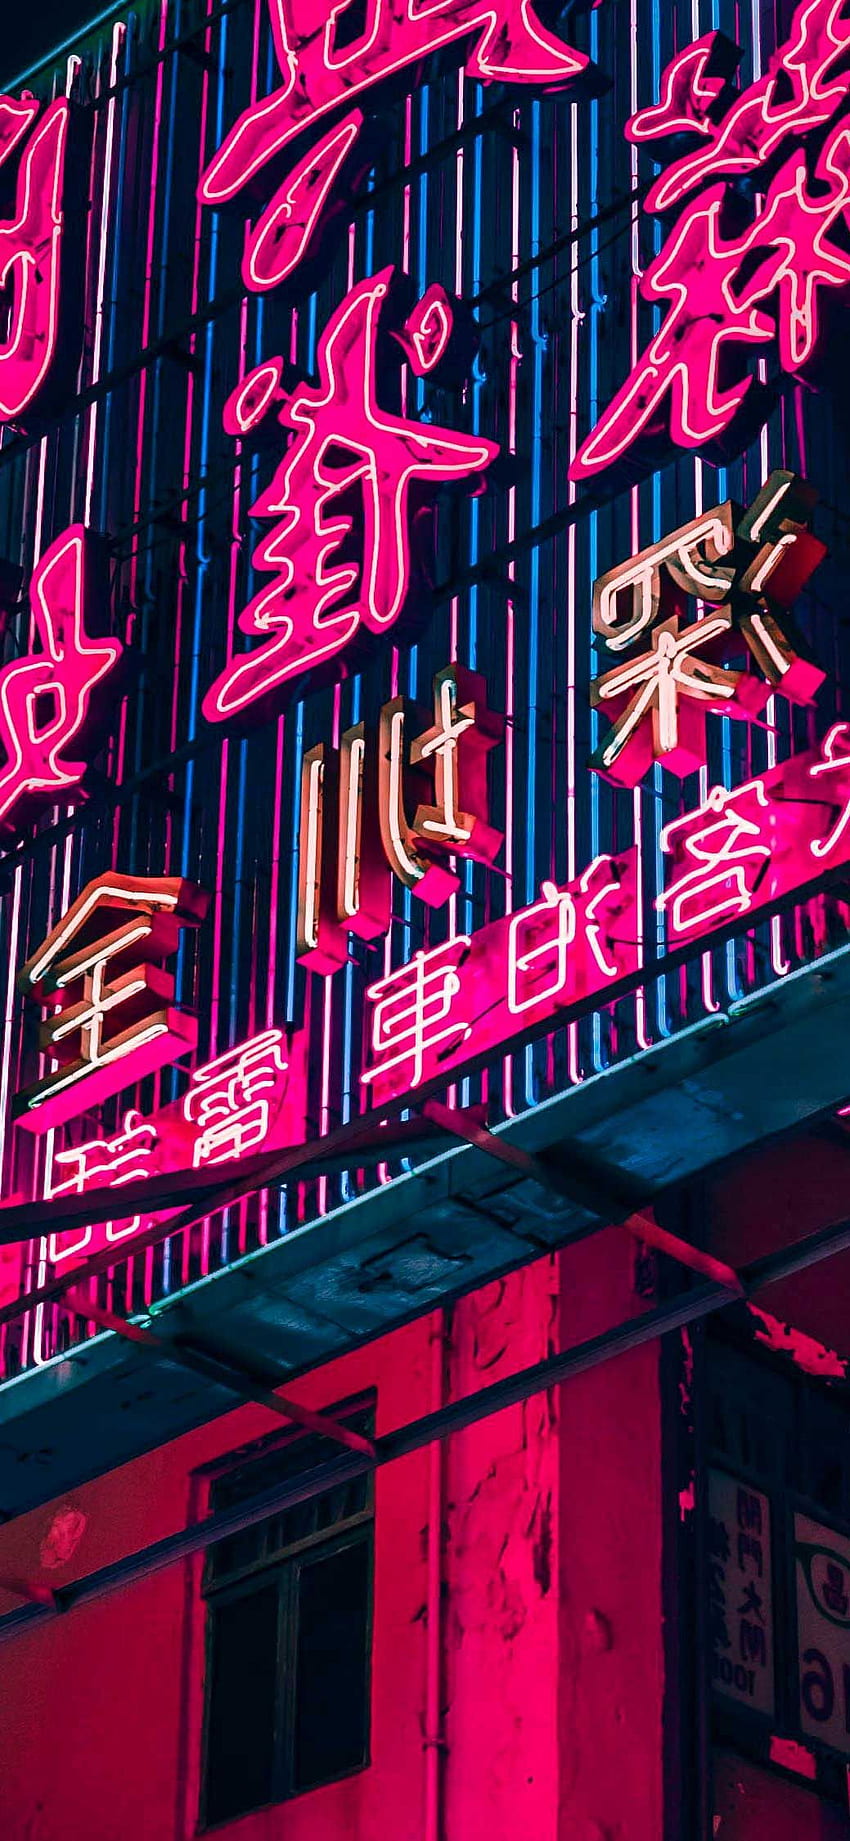 iPhone kota neon kota hong kong zm. Neon merah muda, iphone neon, Edgy wallpaper ponsel HD